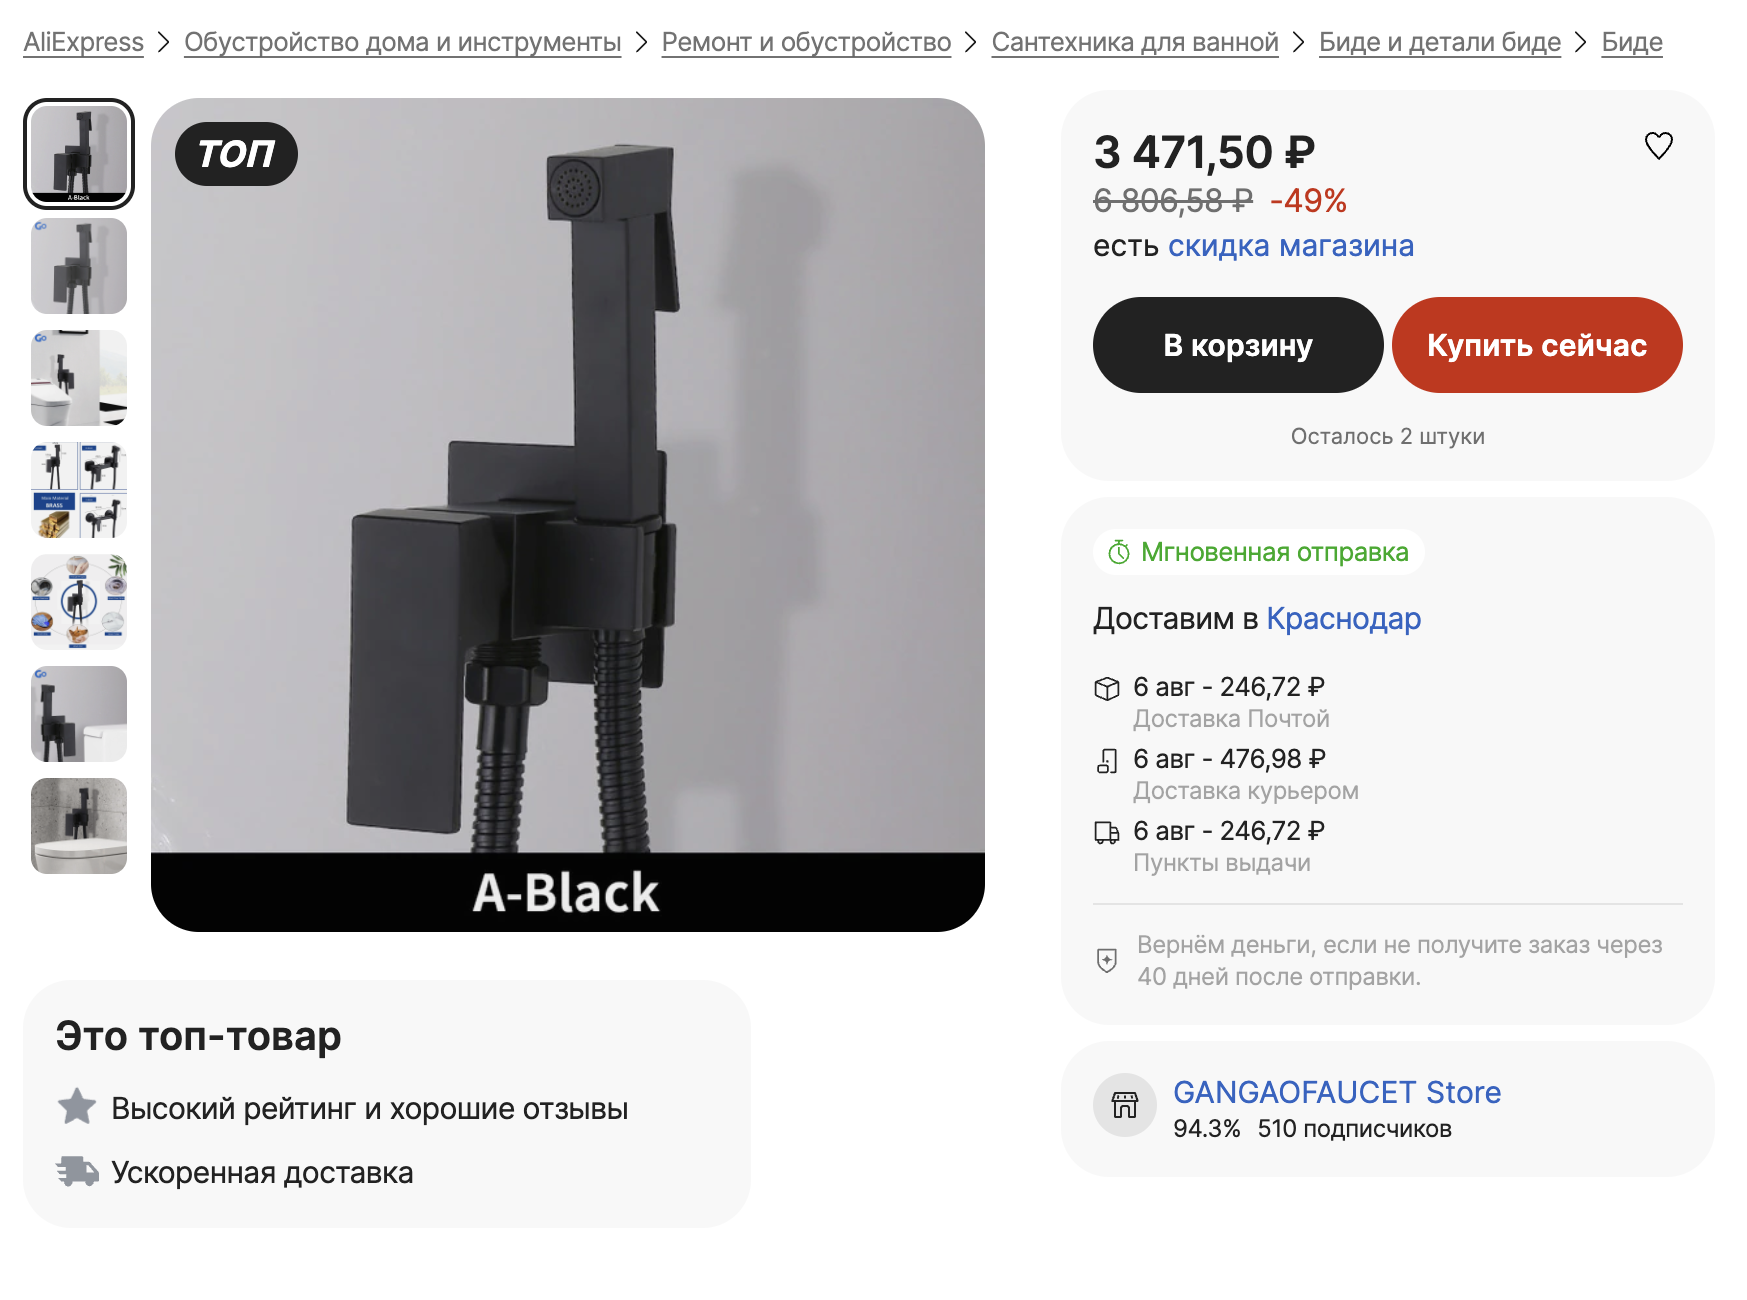 В 2023 году в магазинах появилось больше бюджетных вариантов черной сантехники, и цены на нее ниже, чем в 2022 году. Источник: aliexpress.ru